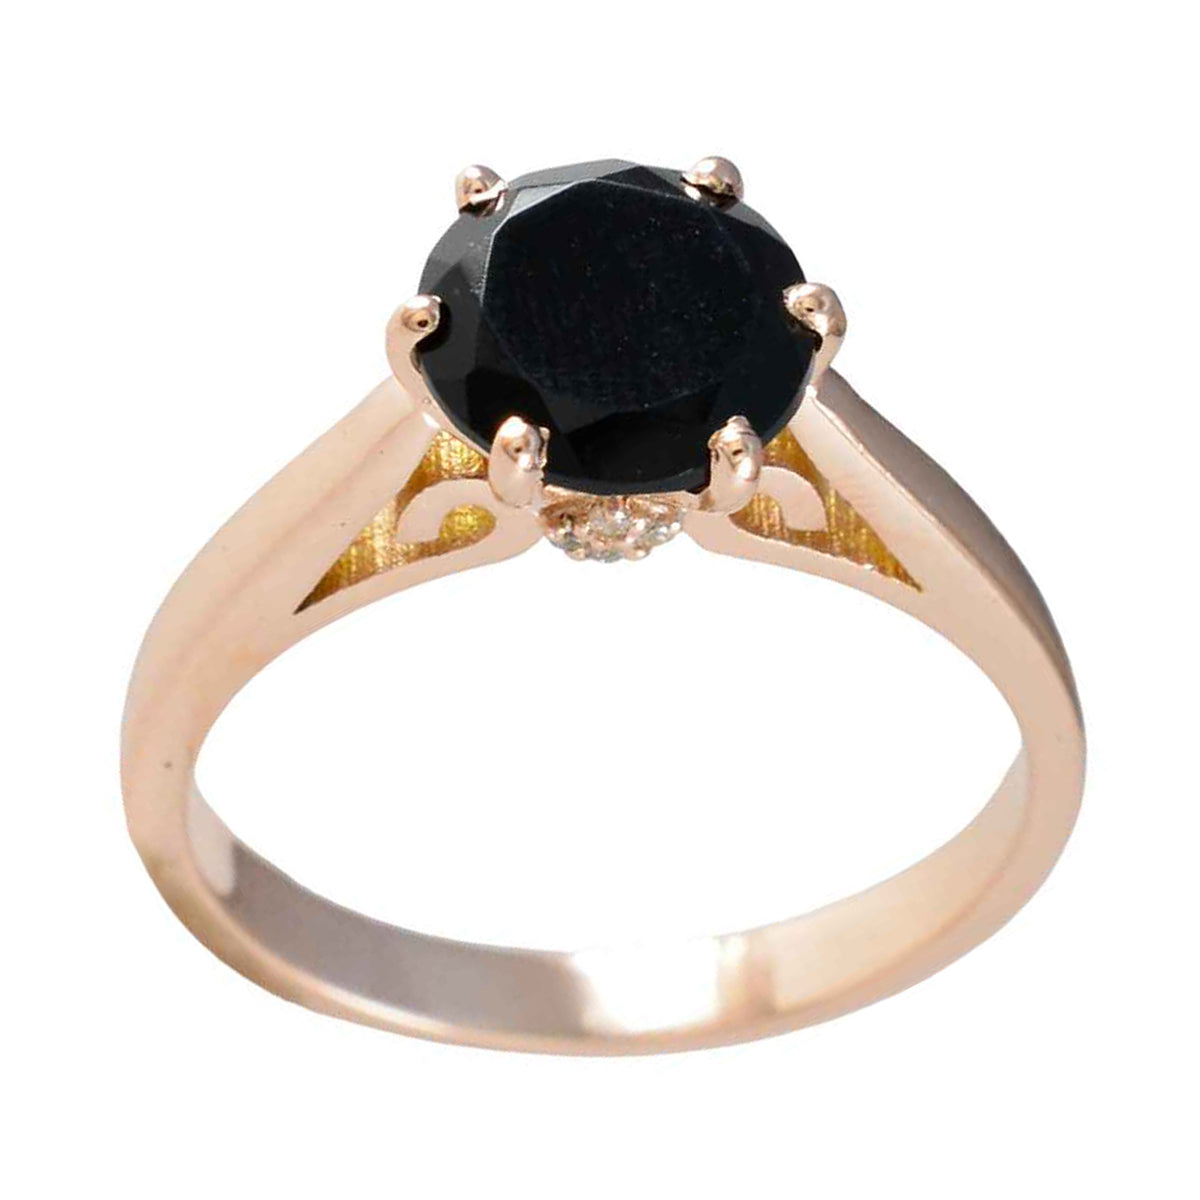 Riyo Quantitativer Silberring mit Rosévergoldung, schwarzem Onyx-Stein, runde Form, Krappenfassung, Brautschmuck, Black-Friday-Ring